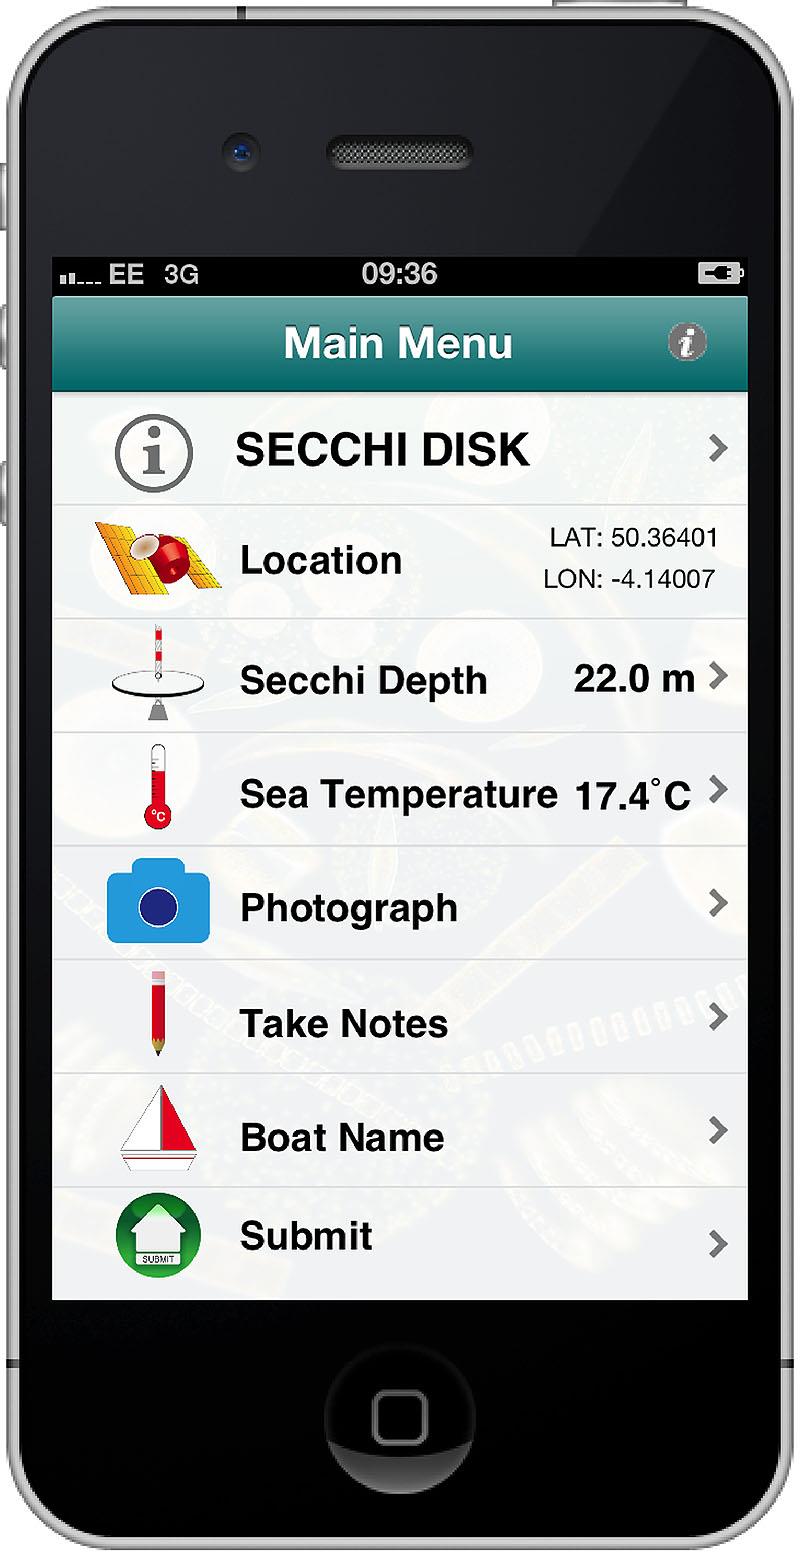 Main Menu of the Secchi App - photo © Secchi Disk Study